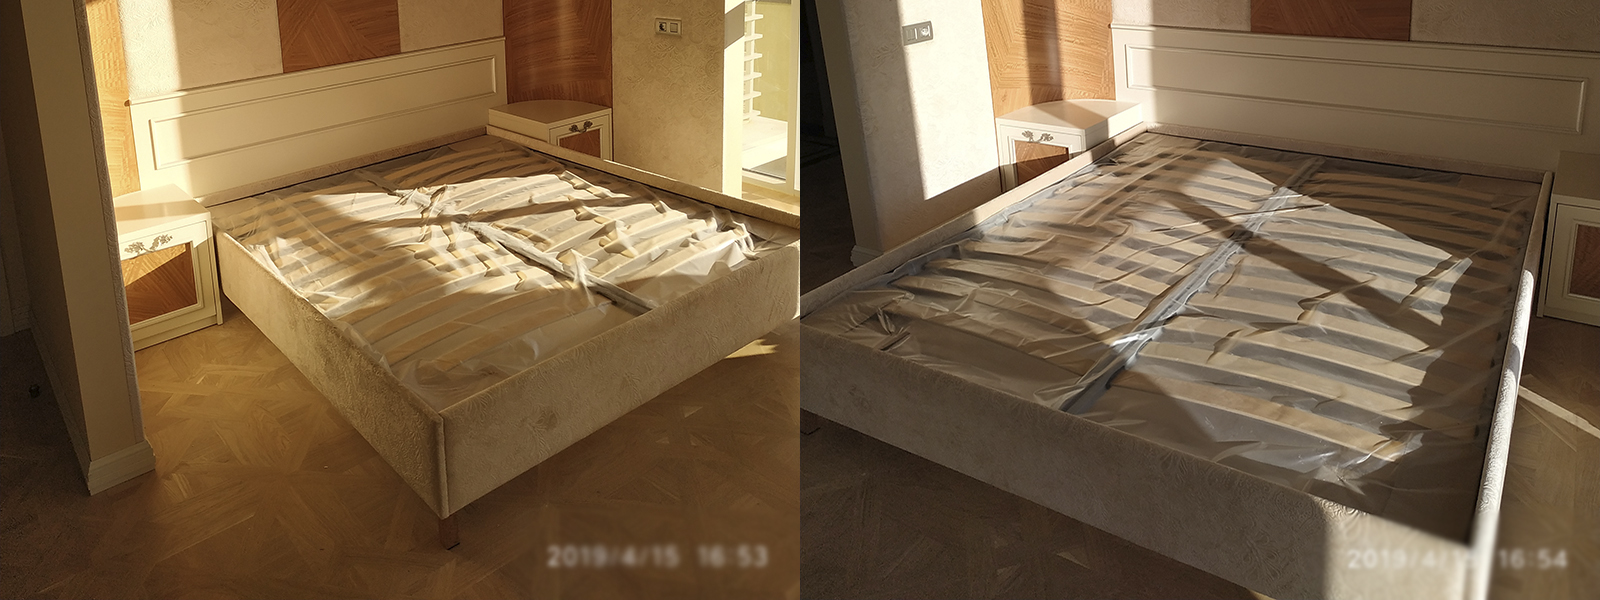 Обтяжка кровати в Евпатории недорого на дому и в мастерской, высокое качество тканей